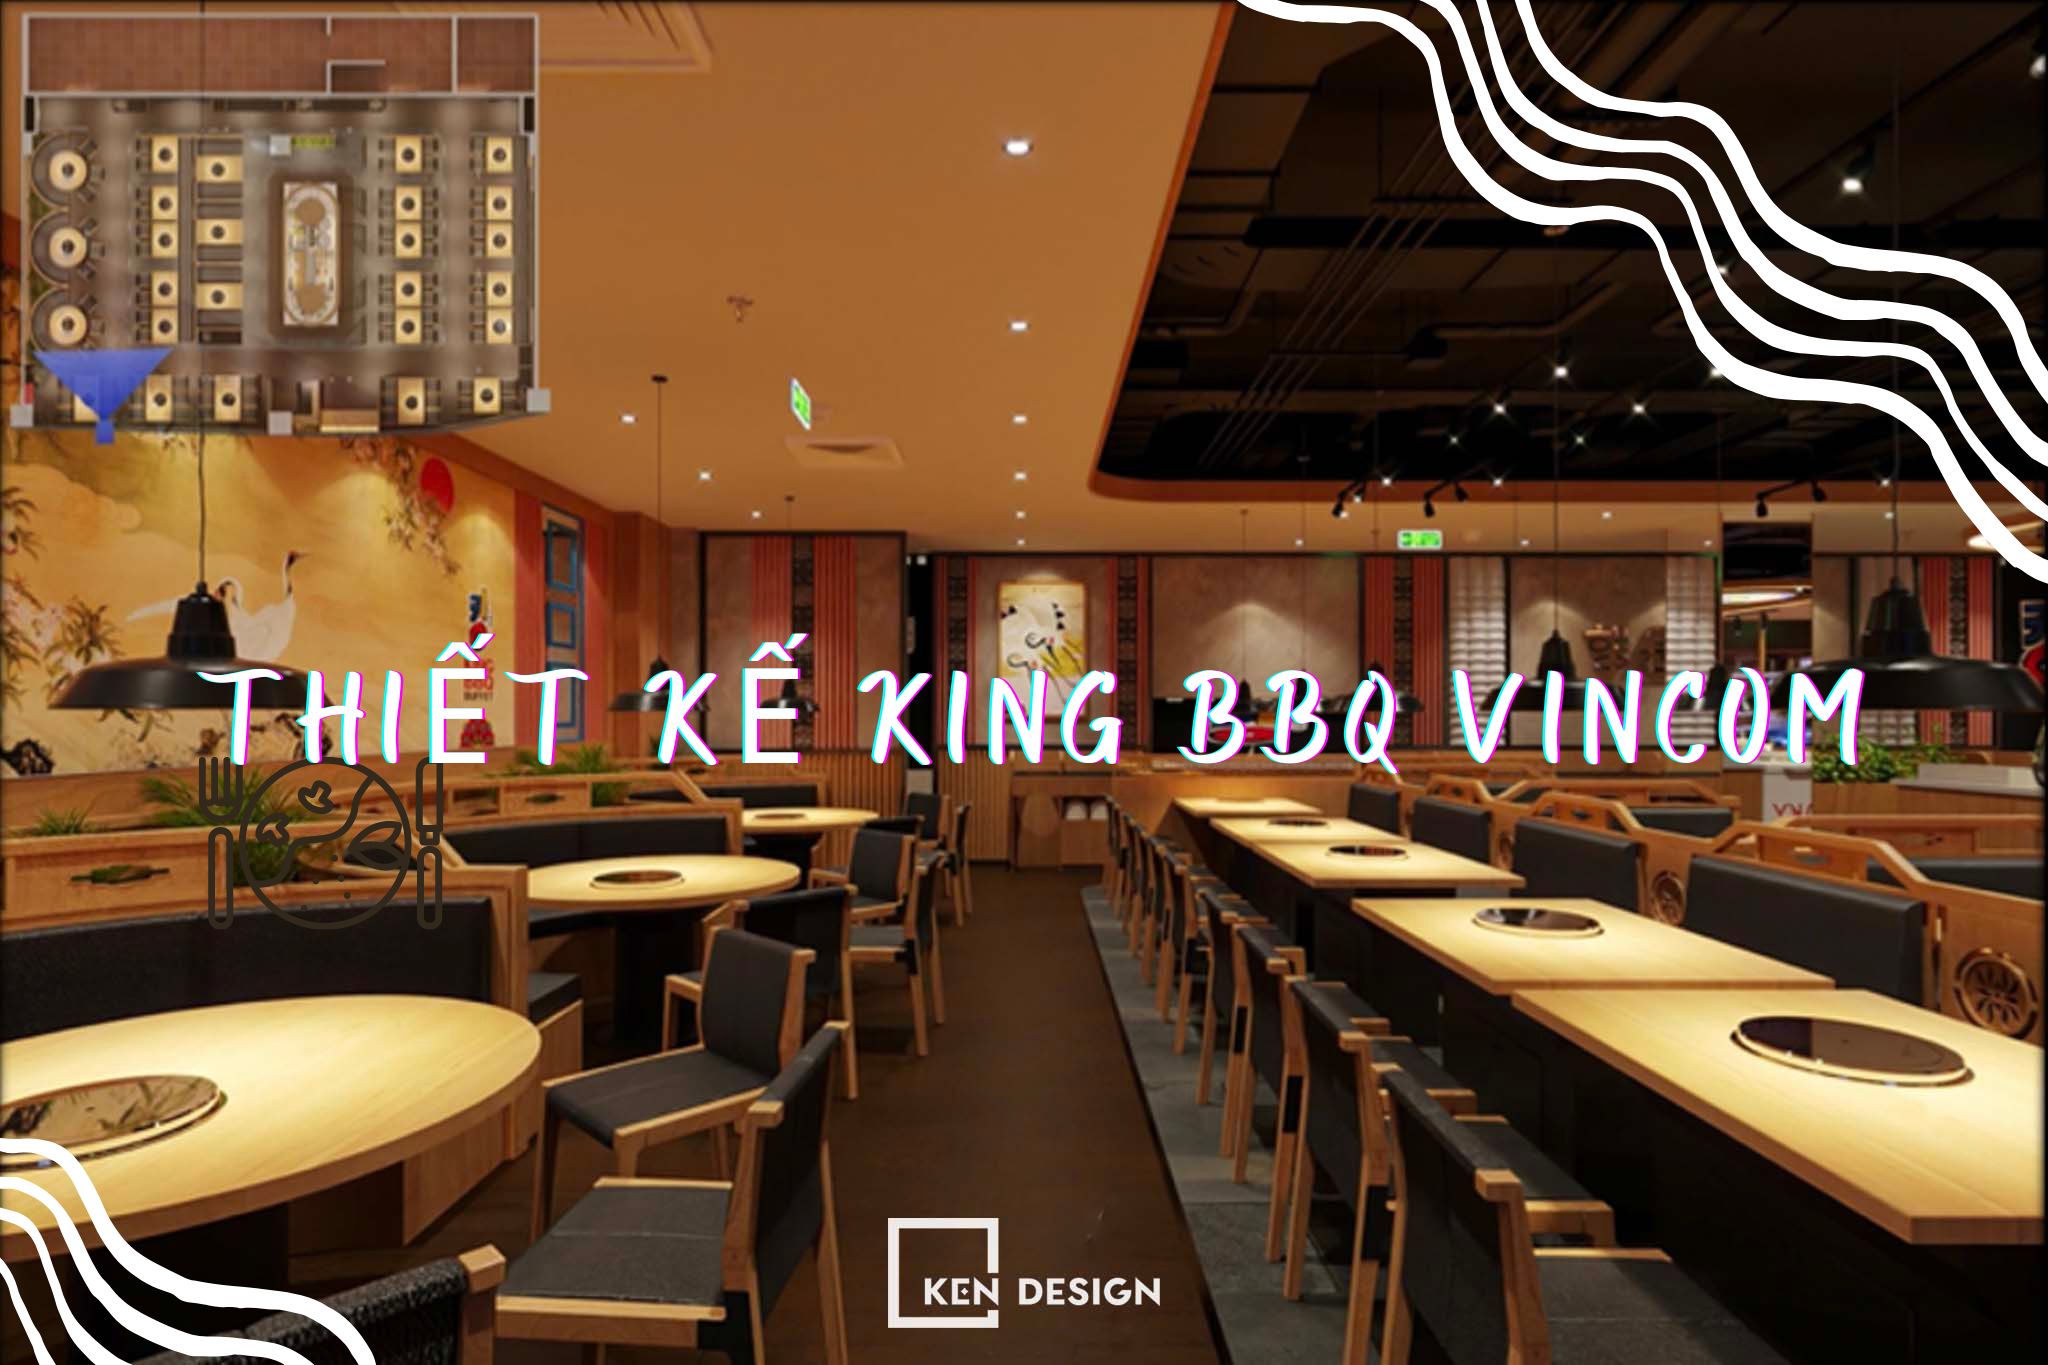 King BBQ Vincom: Hãy đến với King BBQ Vincom để cảm nhận thực đơn đa dạng và hương vị thơm ngon đến không ngờ. Với không gian sang trọng và phong cách phục vụ chuyên nghiệp, quán luôn đem lại trải nghiệm tuyệt vời cho thực khách. Vào đến King BBQ Vincom, bạn sẽ cảm nhận được niềm tự hào của chúng tôi về sự chăm sóc khách hàng và chất lượng dịch vụ của mình.